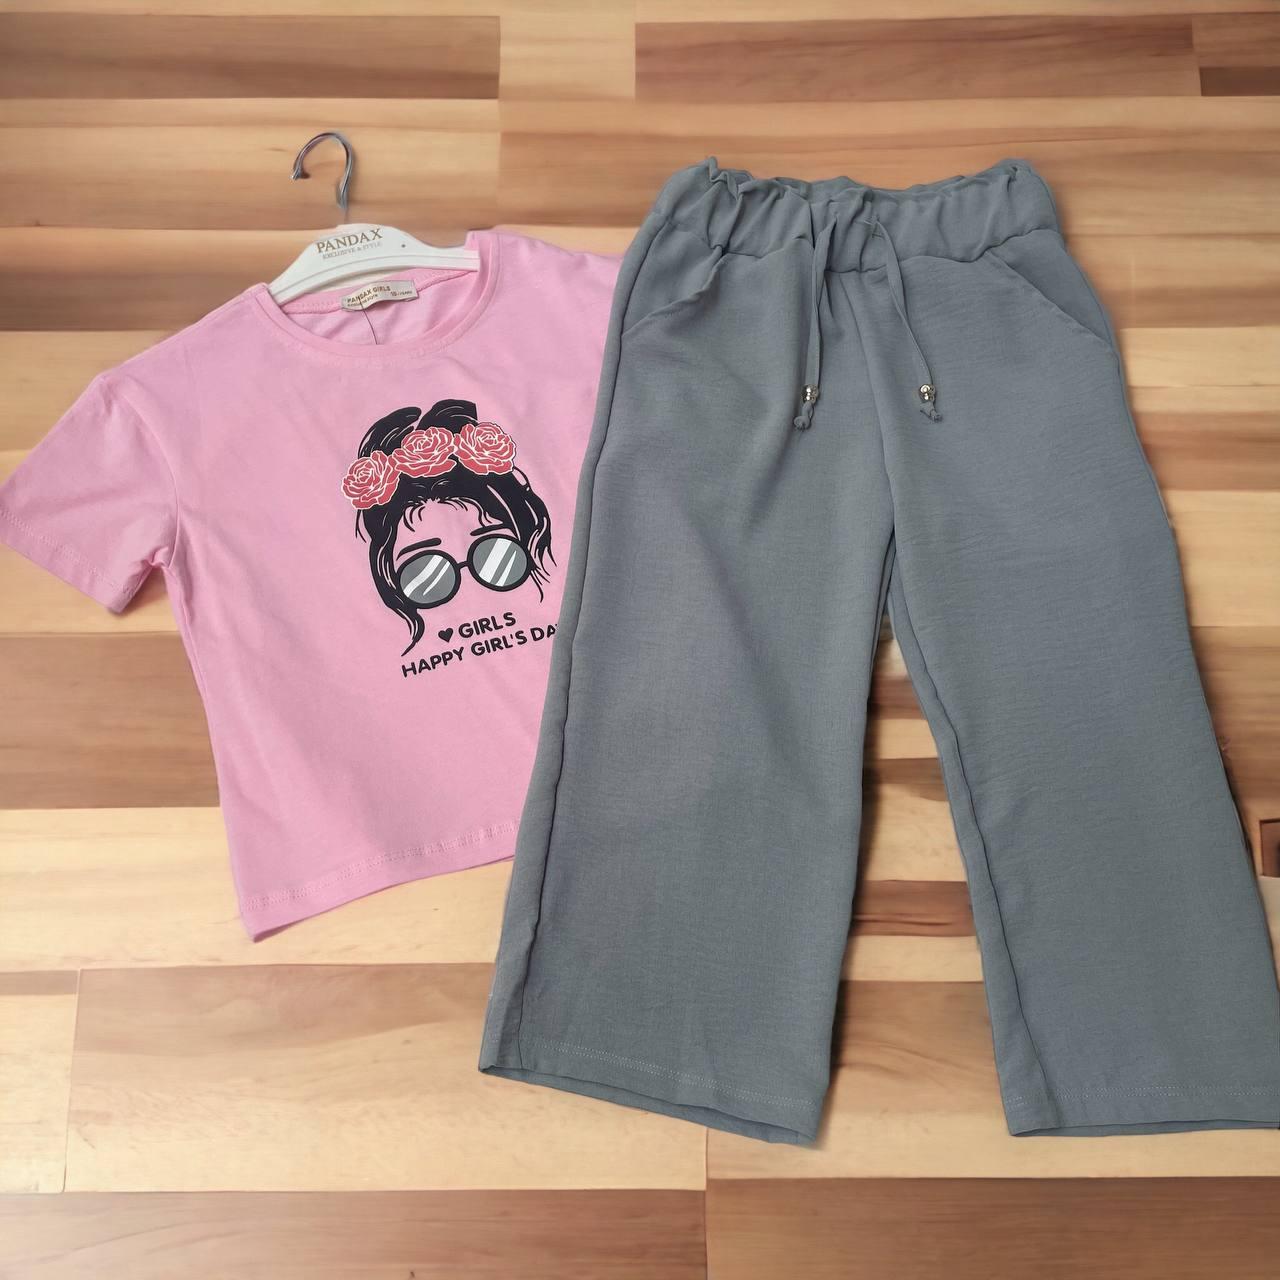 Спортивний дитячий костюм на дівчинку, рожевий + сірий, футболка + штани, TP Pandax (7-10 л.)